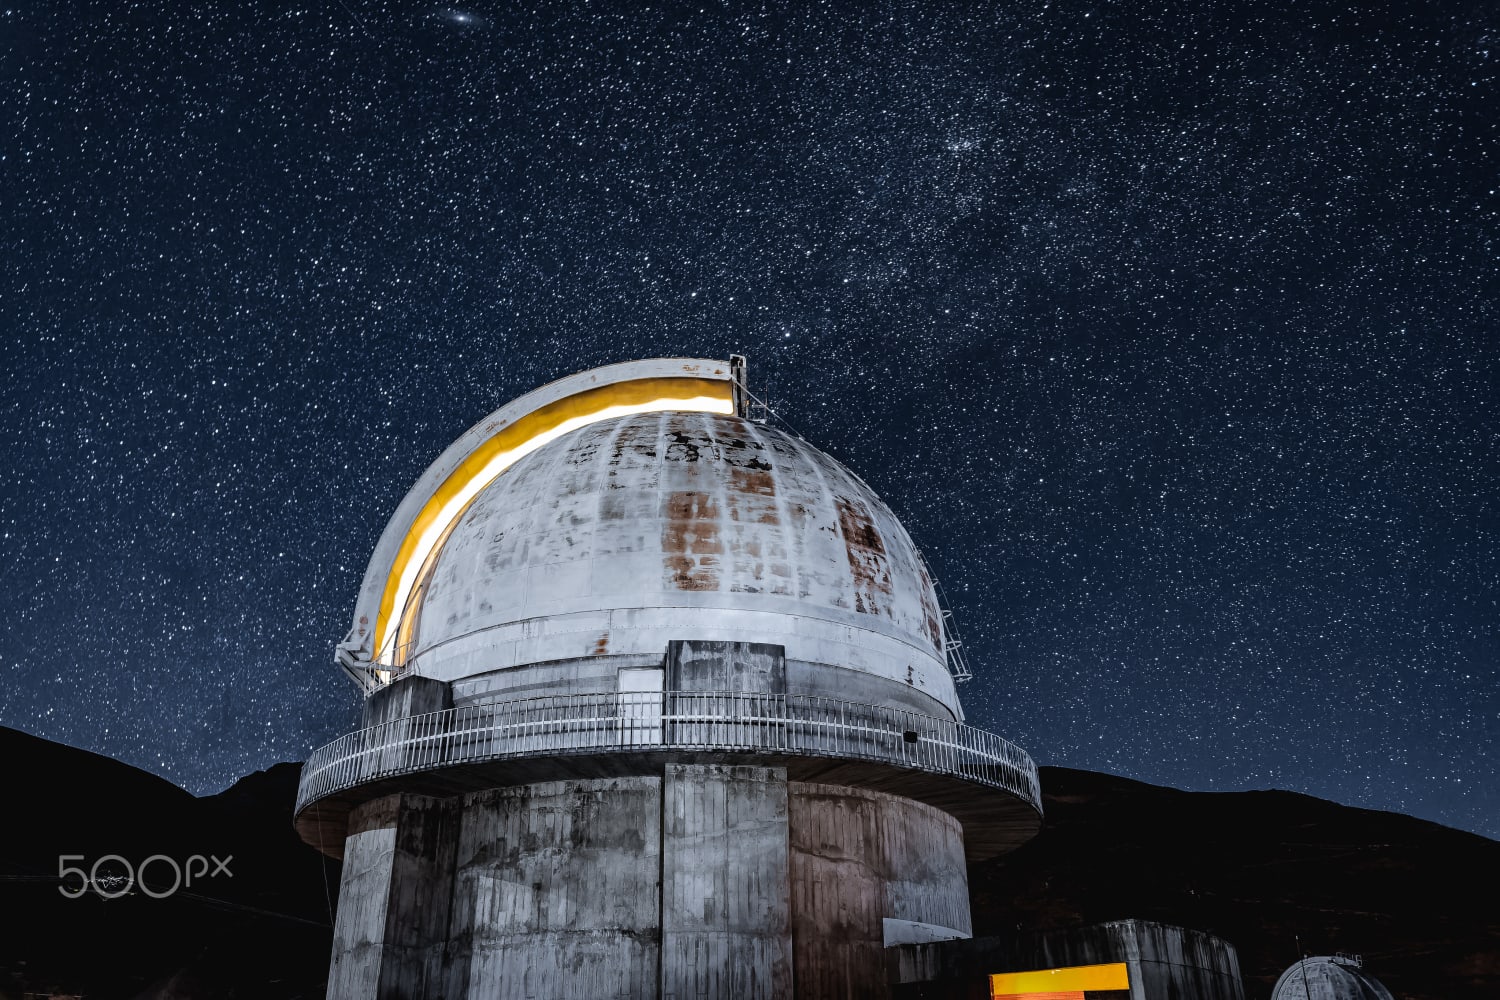 Observatorio astronómico nacional de llano del hato, Venezuela